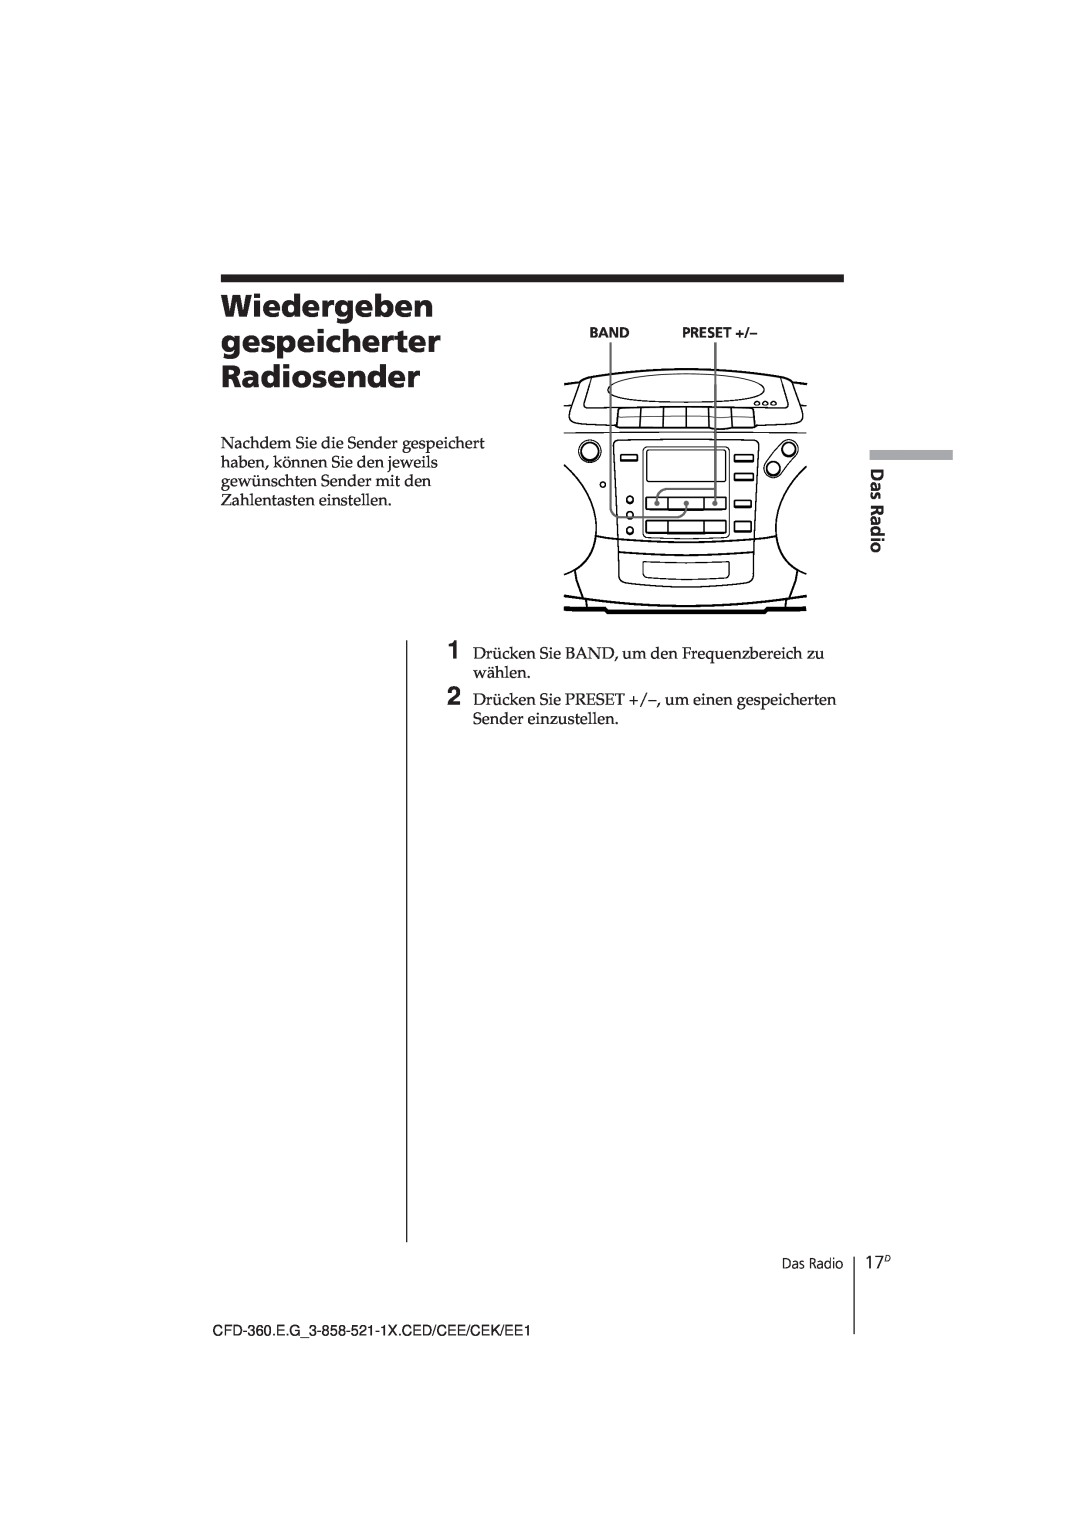 Sony CFD-360 operating instructions gespeicherter, Radiosender, Wiedergeben 